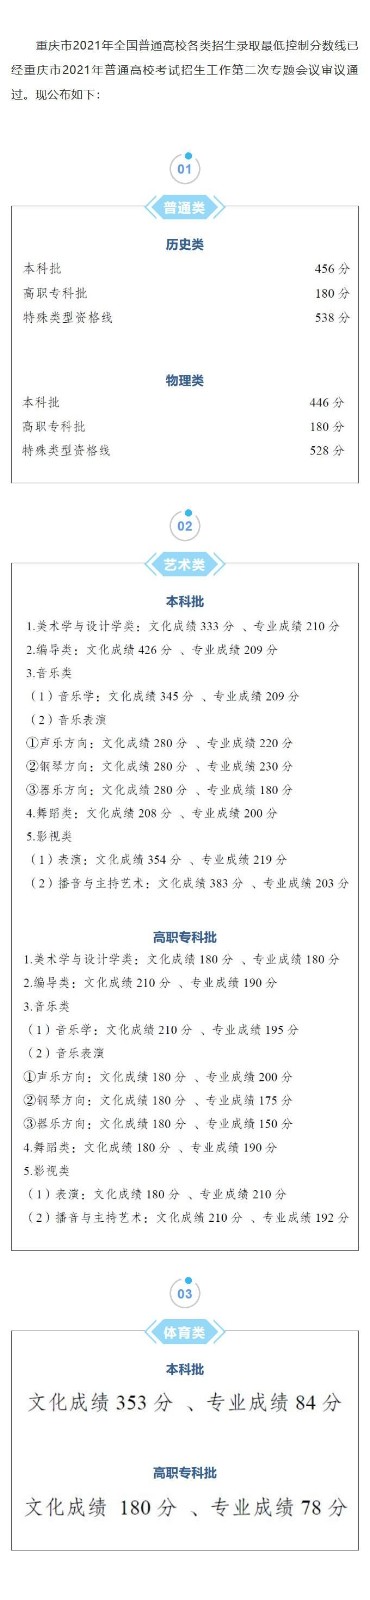 最新2022重庆高考分数线一览表